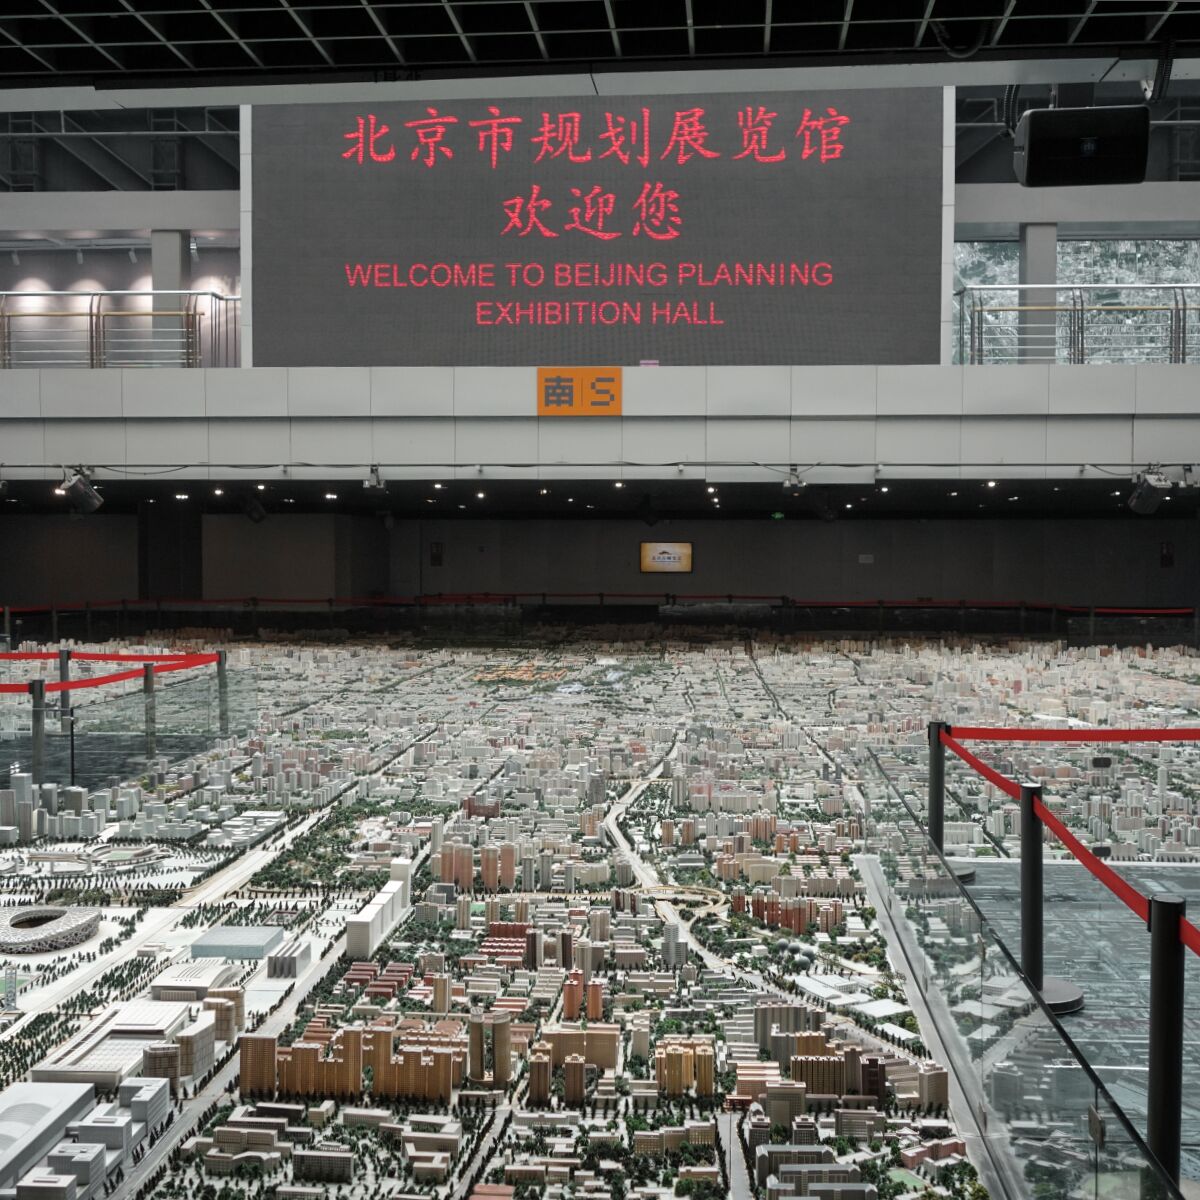 Überblick über die Halle mit dem Pekinger Stadtmodell, an einer Empore ein LED-Bildschirm mit dem Text "Welcome to Beijing Planning Exhibition Hall" auf Englisch und Chinesisch